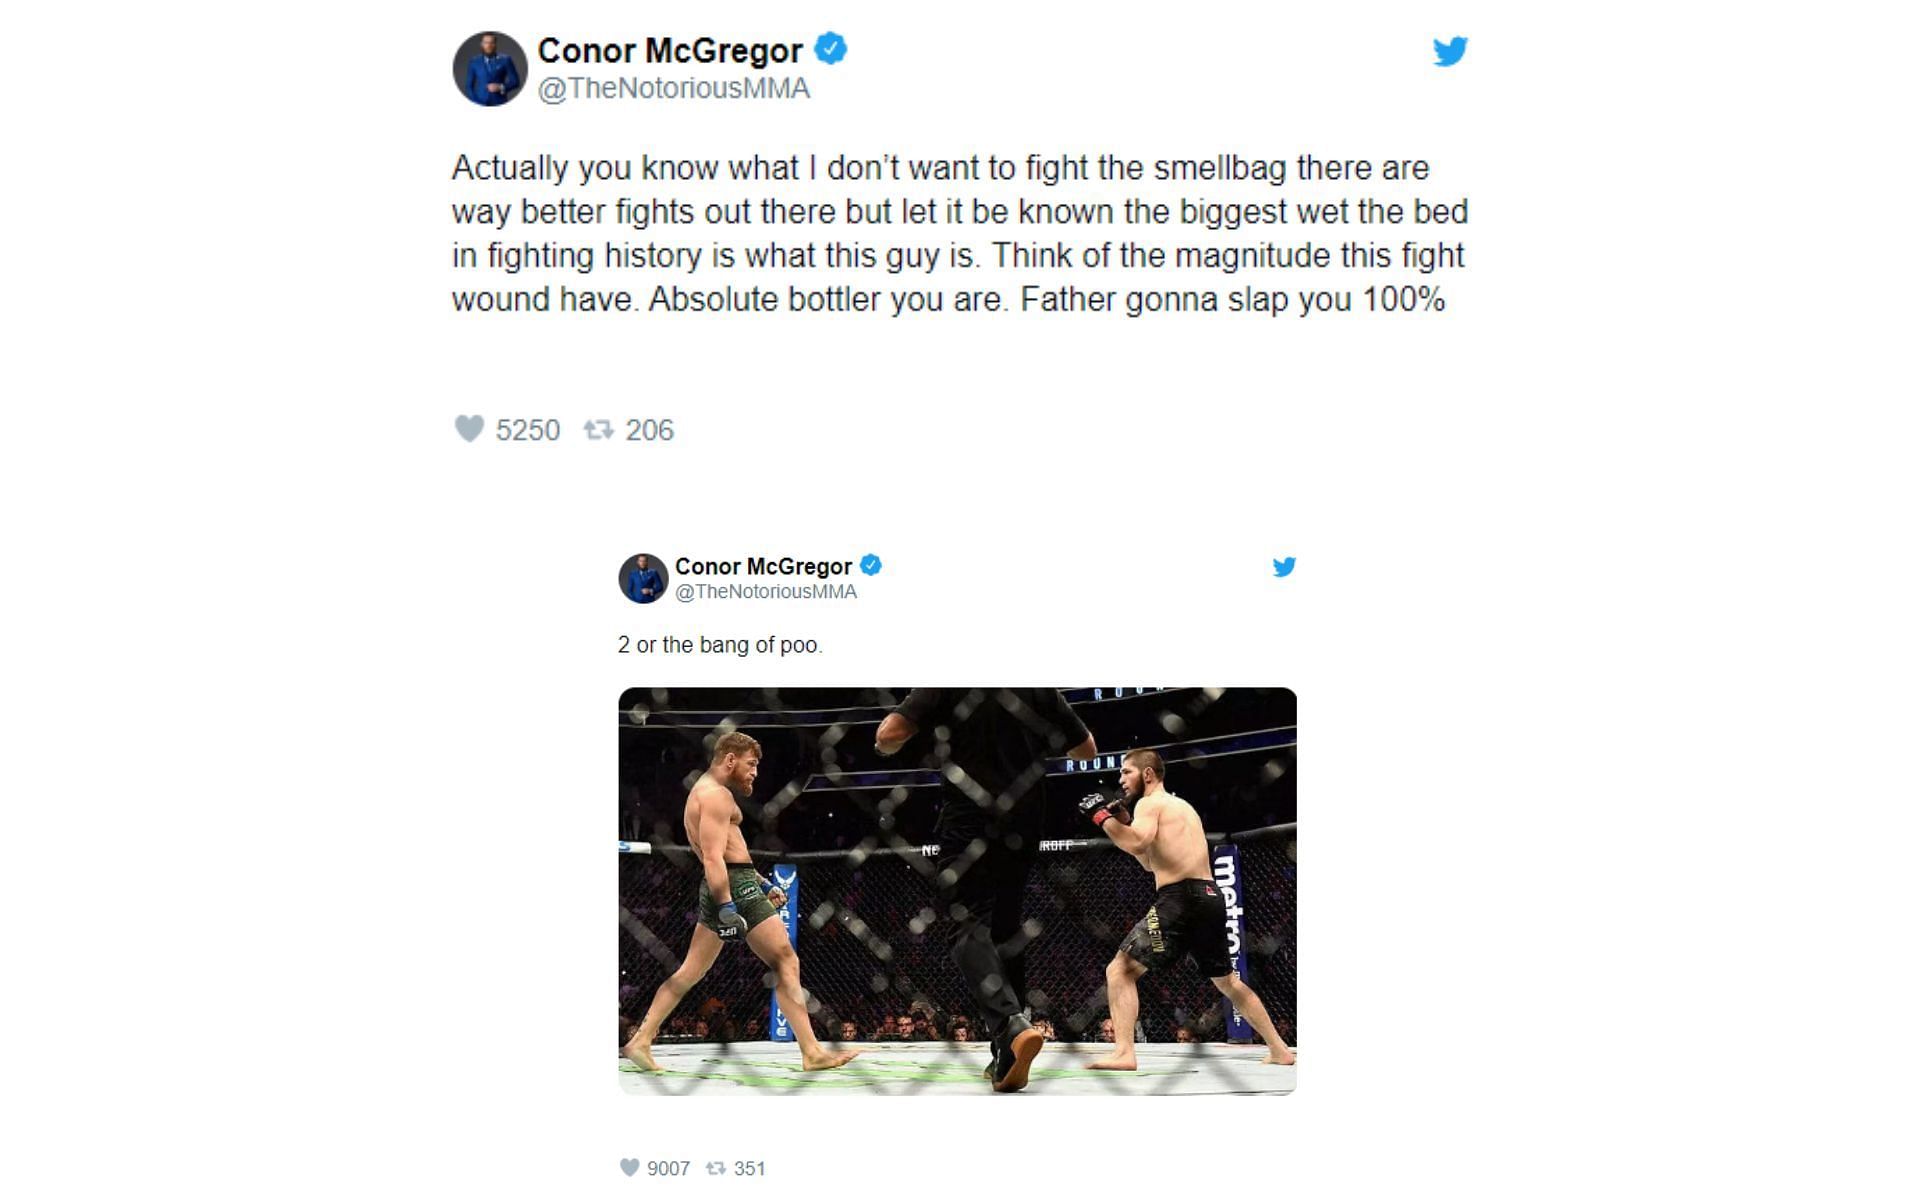 Conor McGregor's tweets about Khabib Nurmagomedov rematch